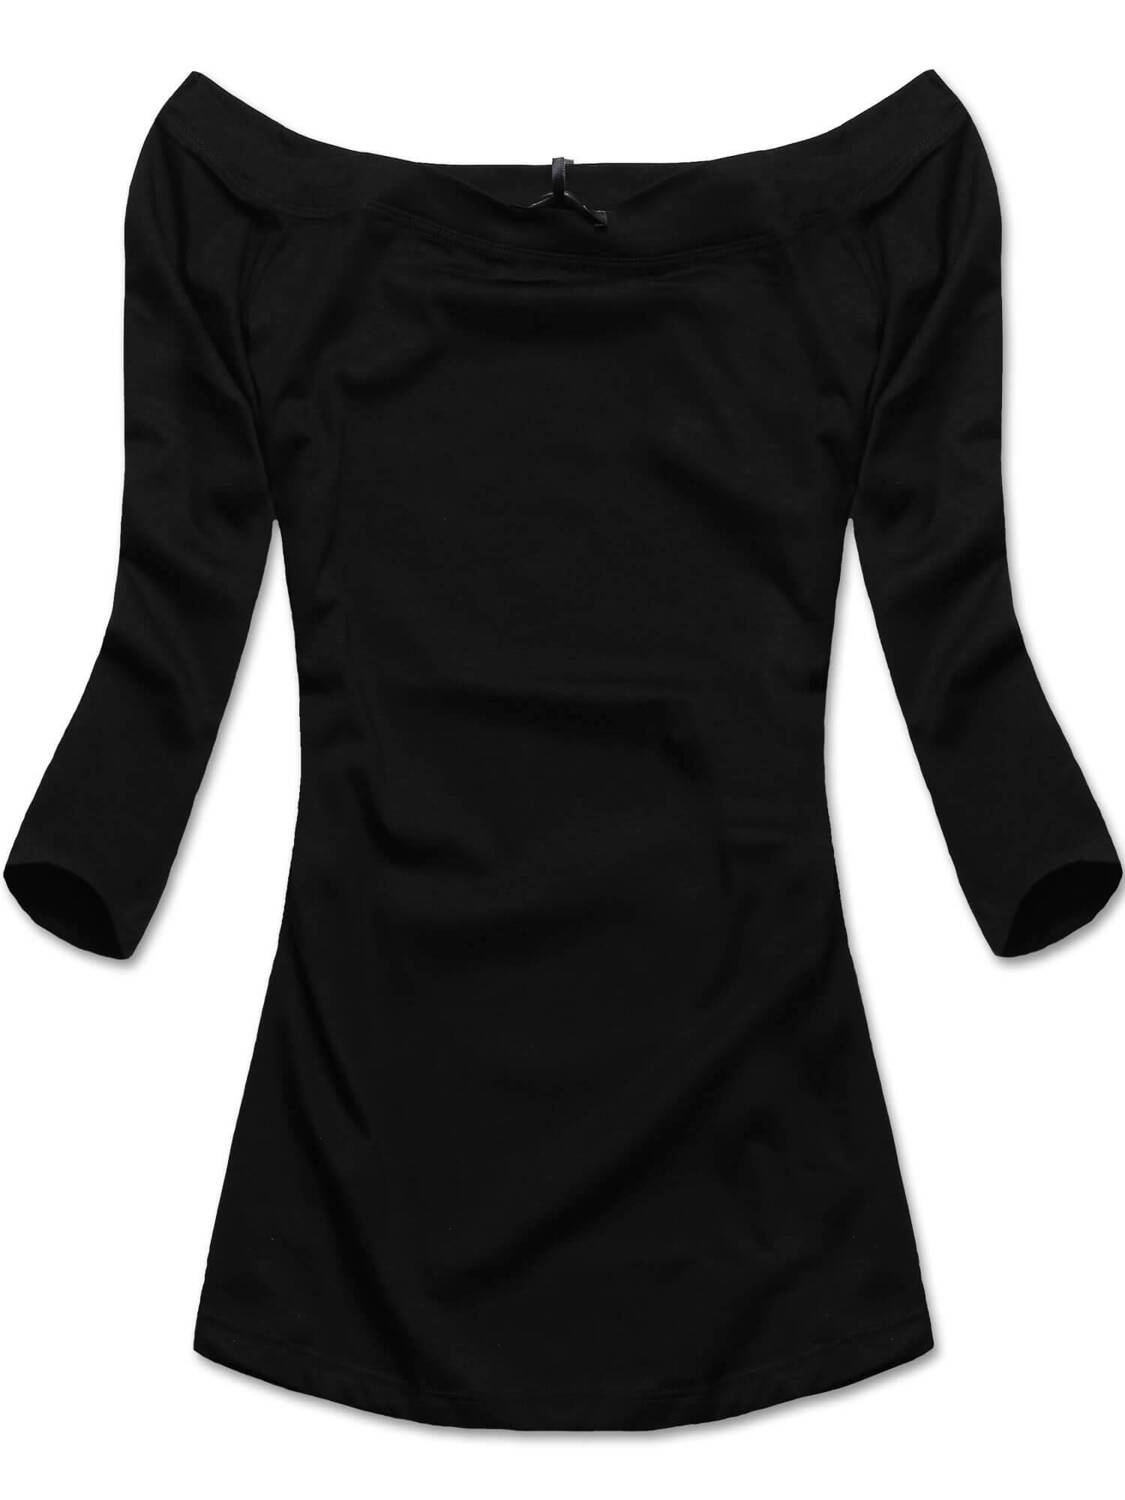 Czarna klasyczna bluzka z dekoltem w łódkę, elegancka i elastyczna